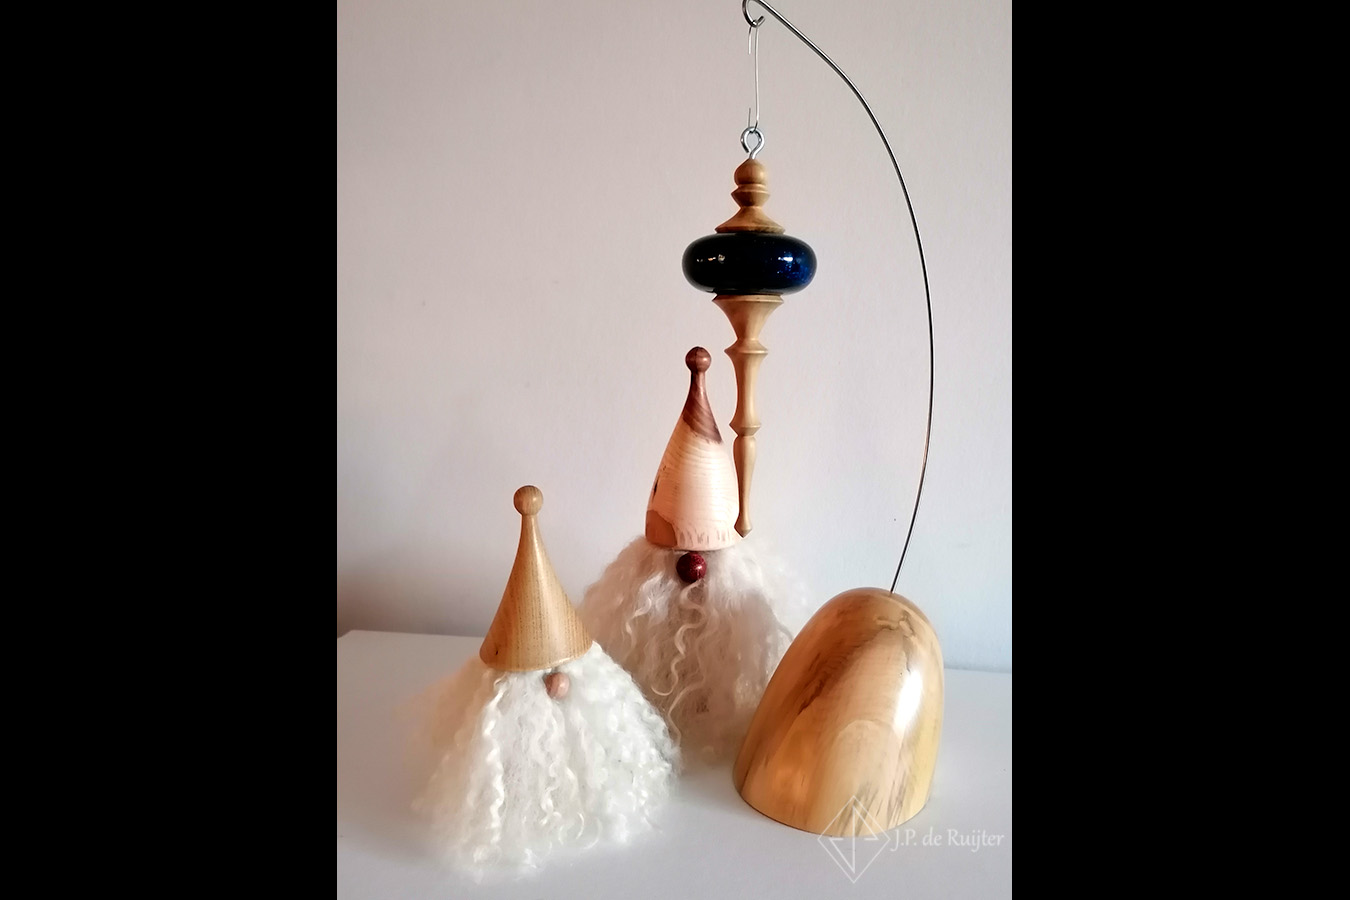 Kerst ornament, van buxus hout en blauwe met goud spikels bal van kunstglas, epoxy. Hangt aan een standaard, samen met gnomes. 